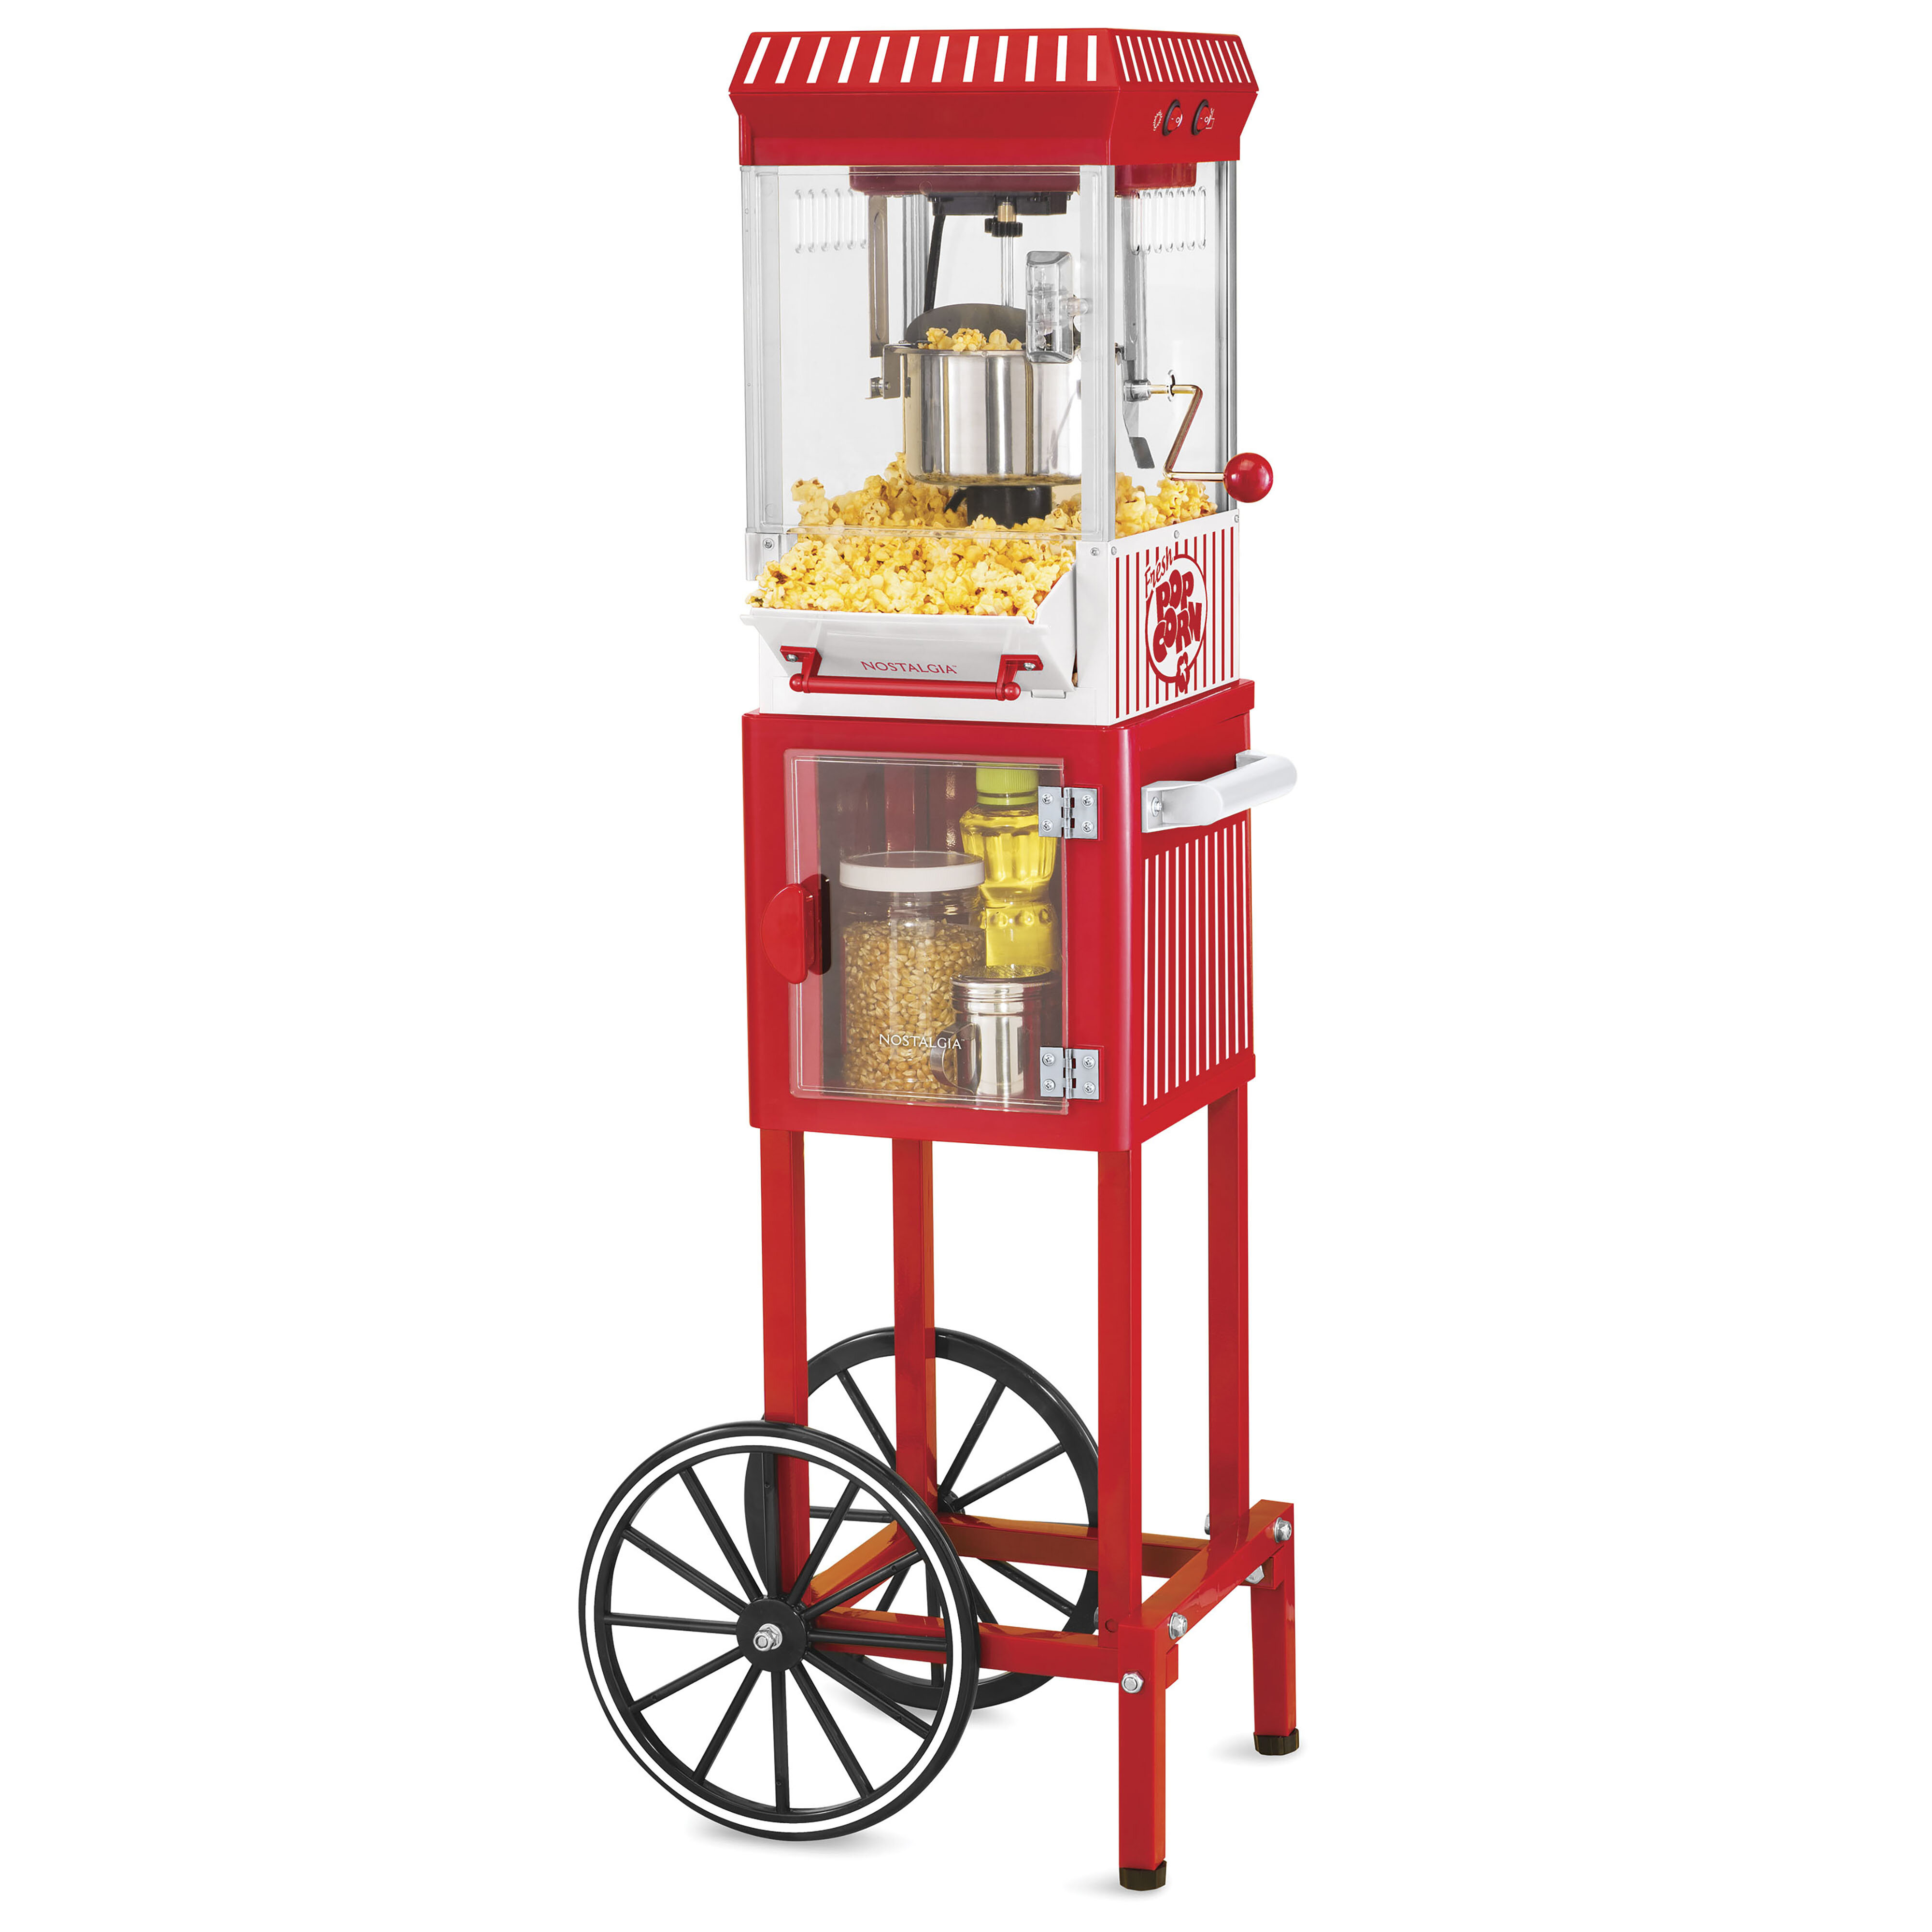 Nostalgia Electrics Retro Hot Air Popcorn Maker - Red, 1 ct - Pay